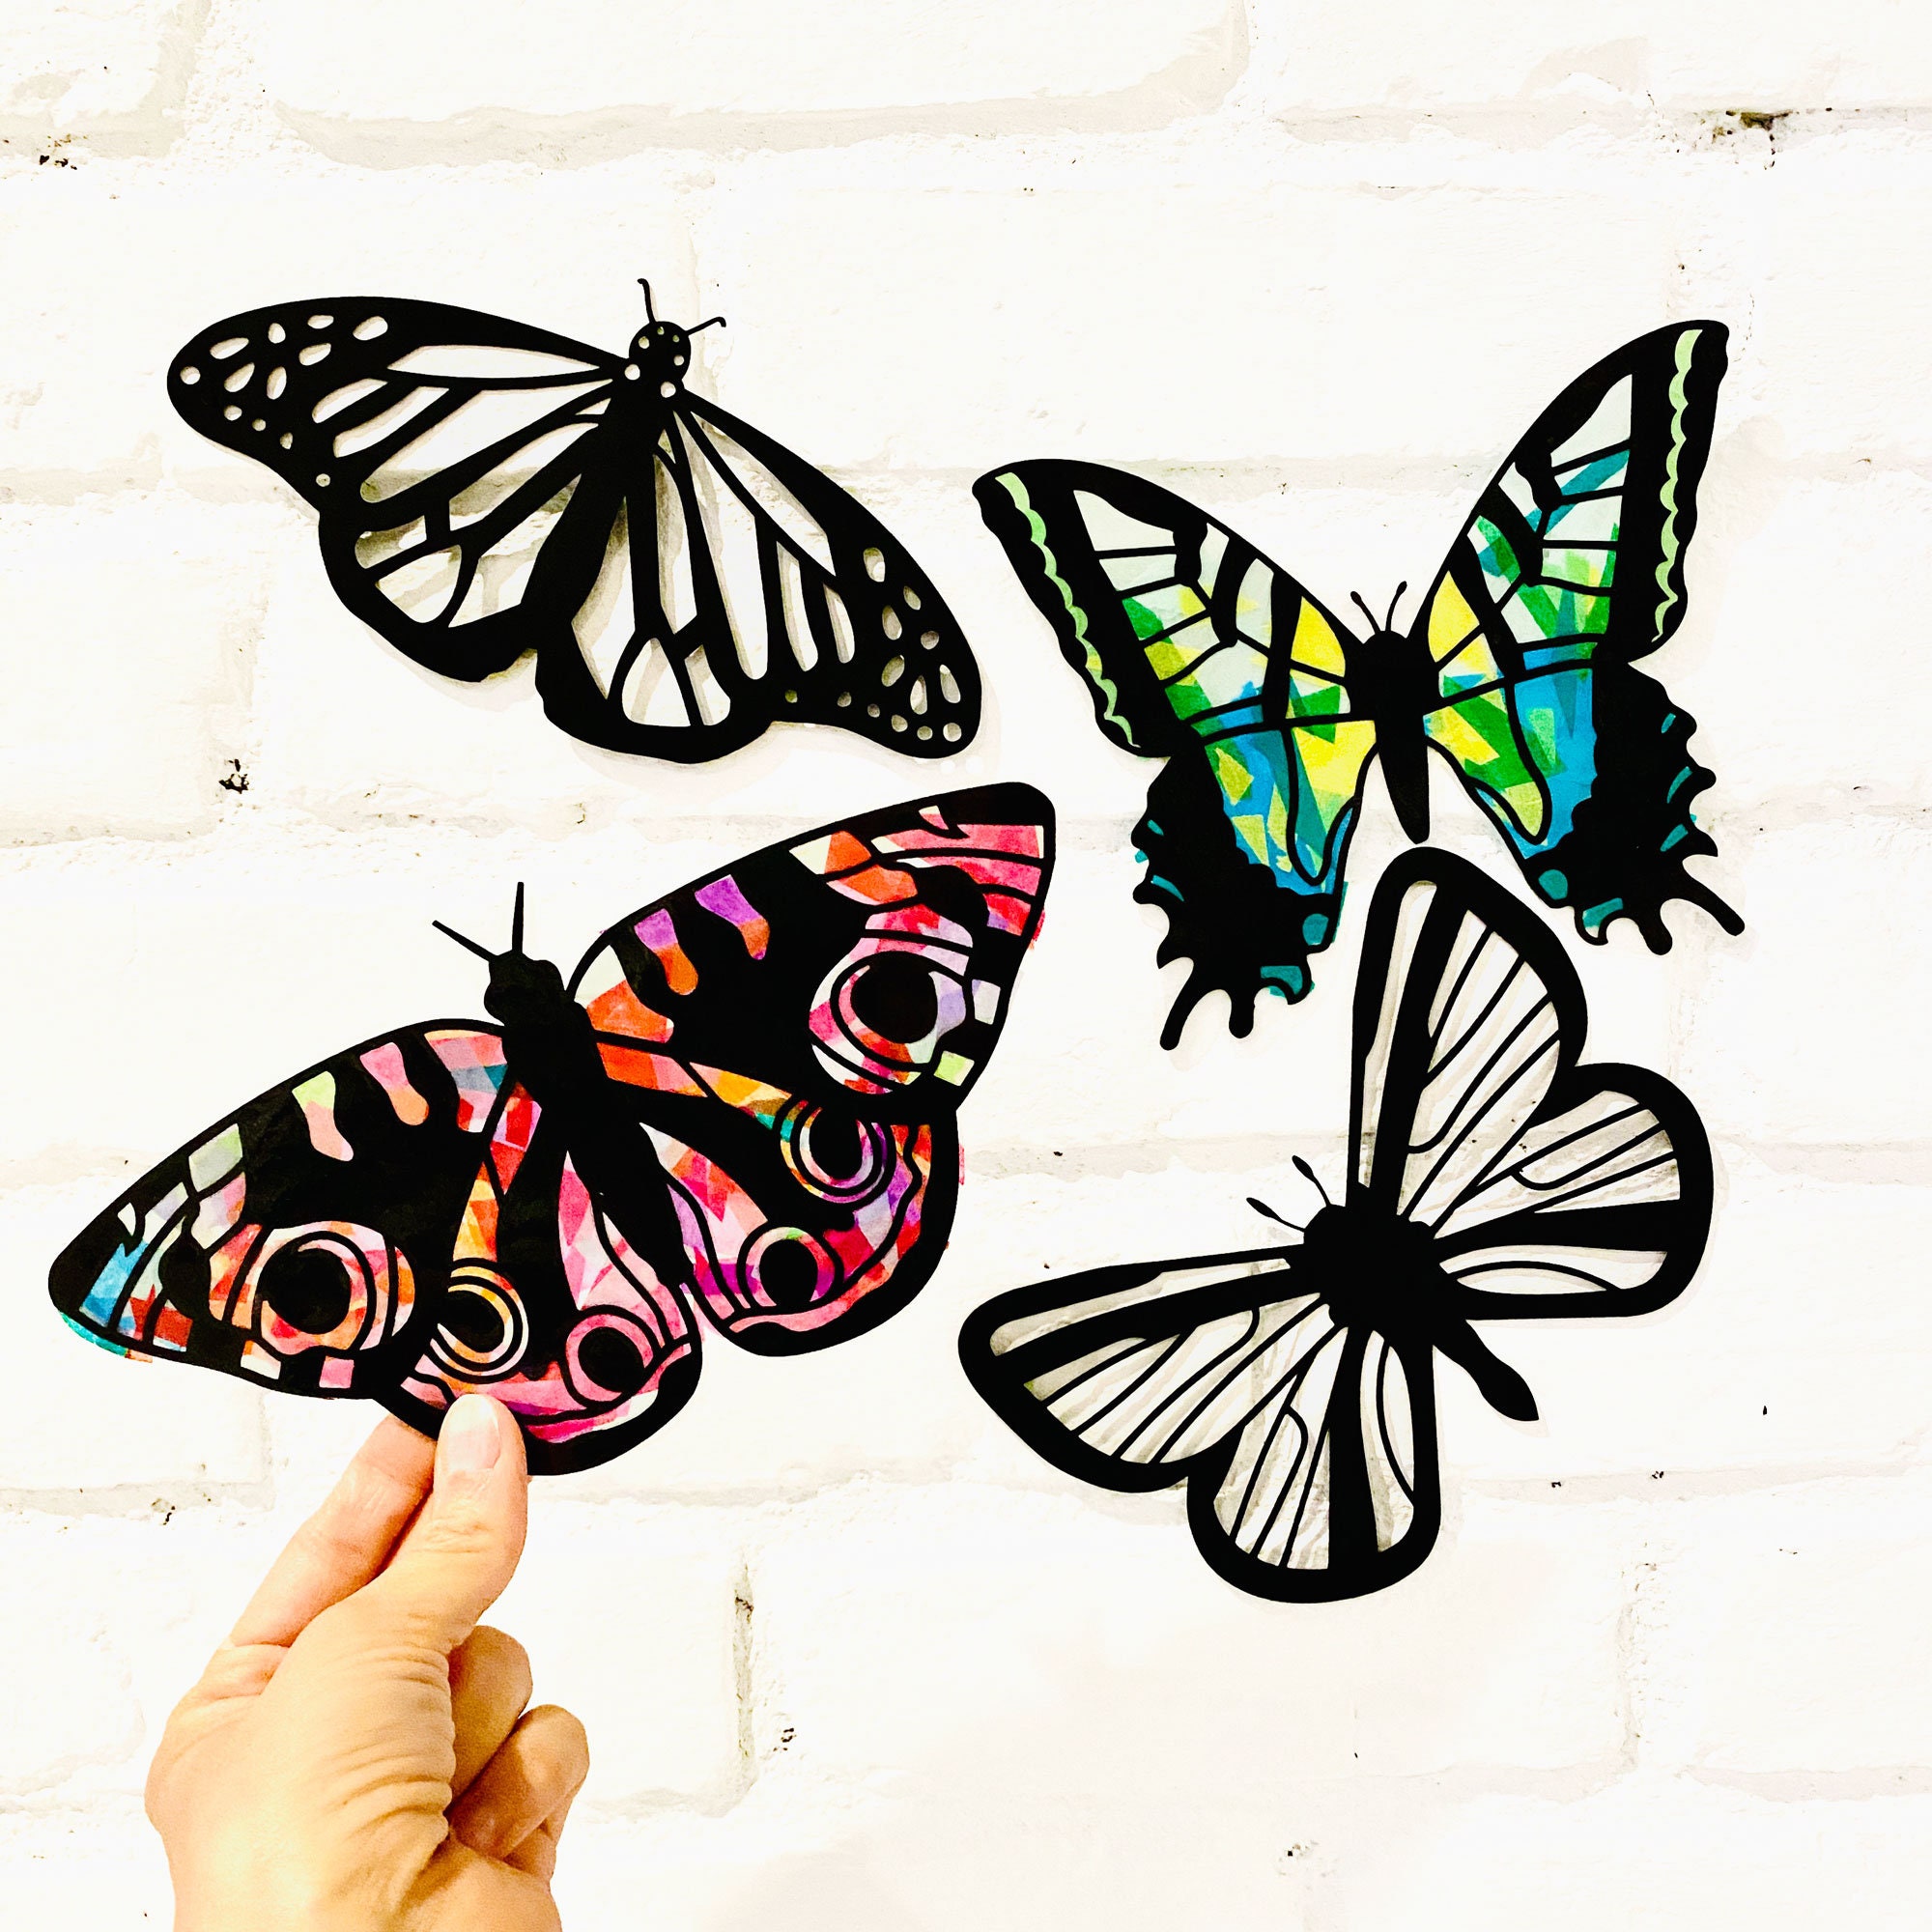 Butterfly Suncatcher Craft - Fun Outdoor Craft for Kids